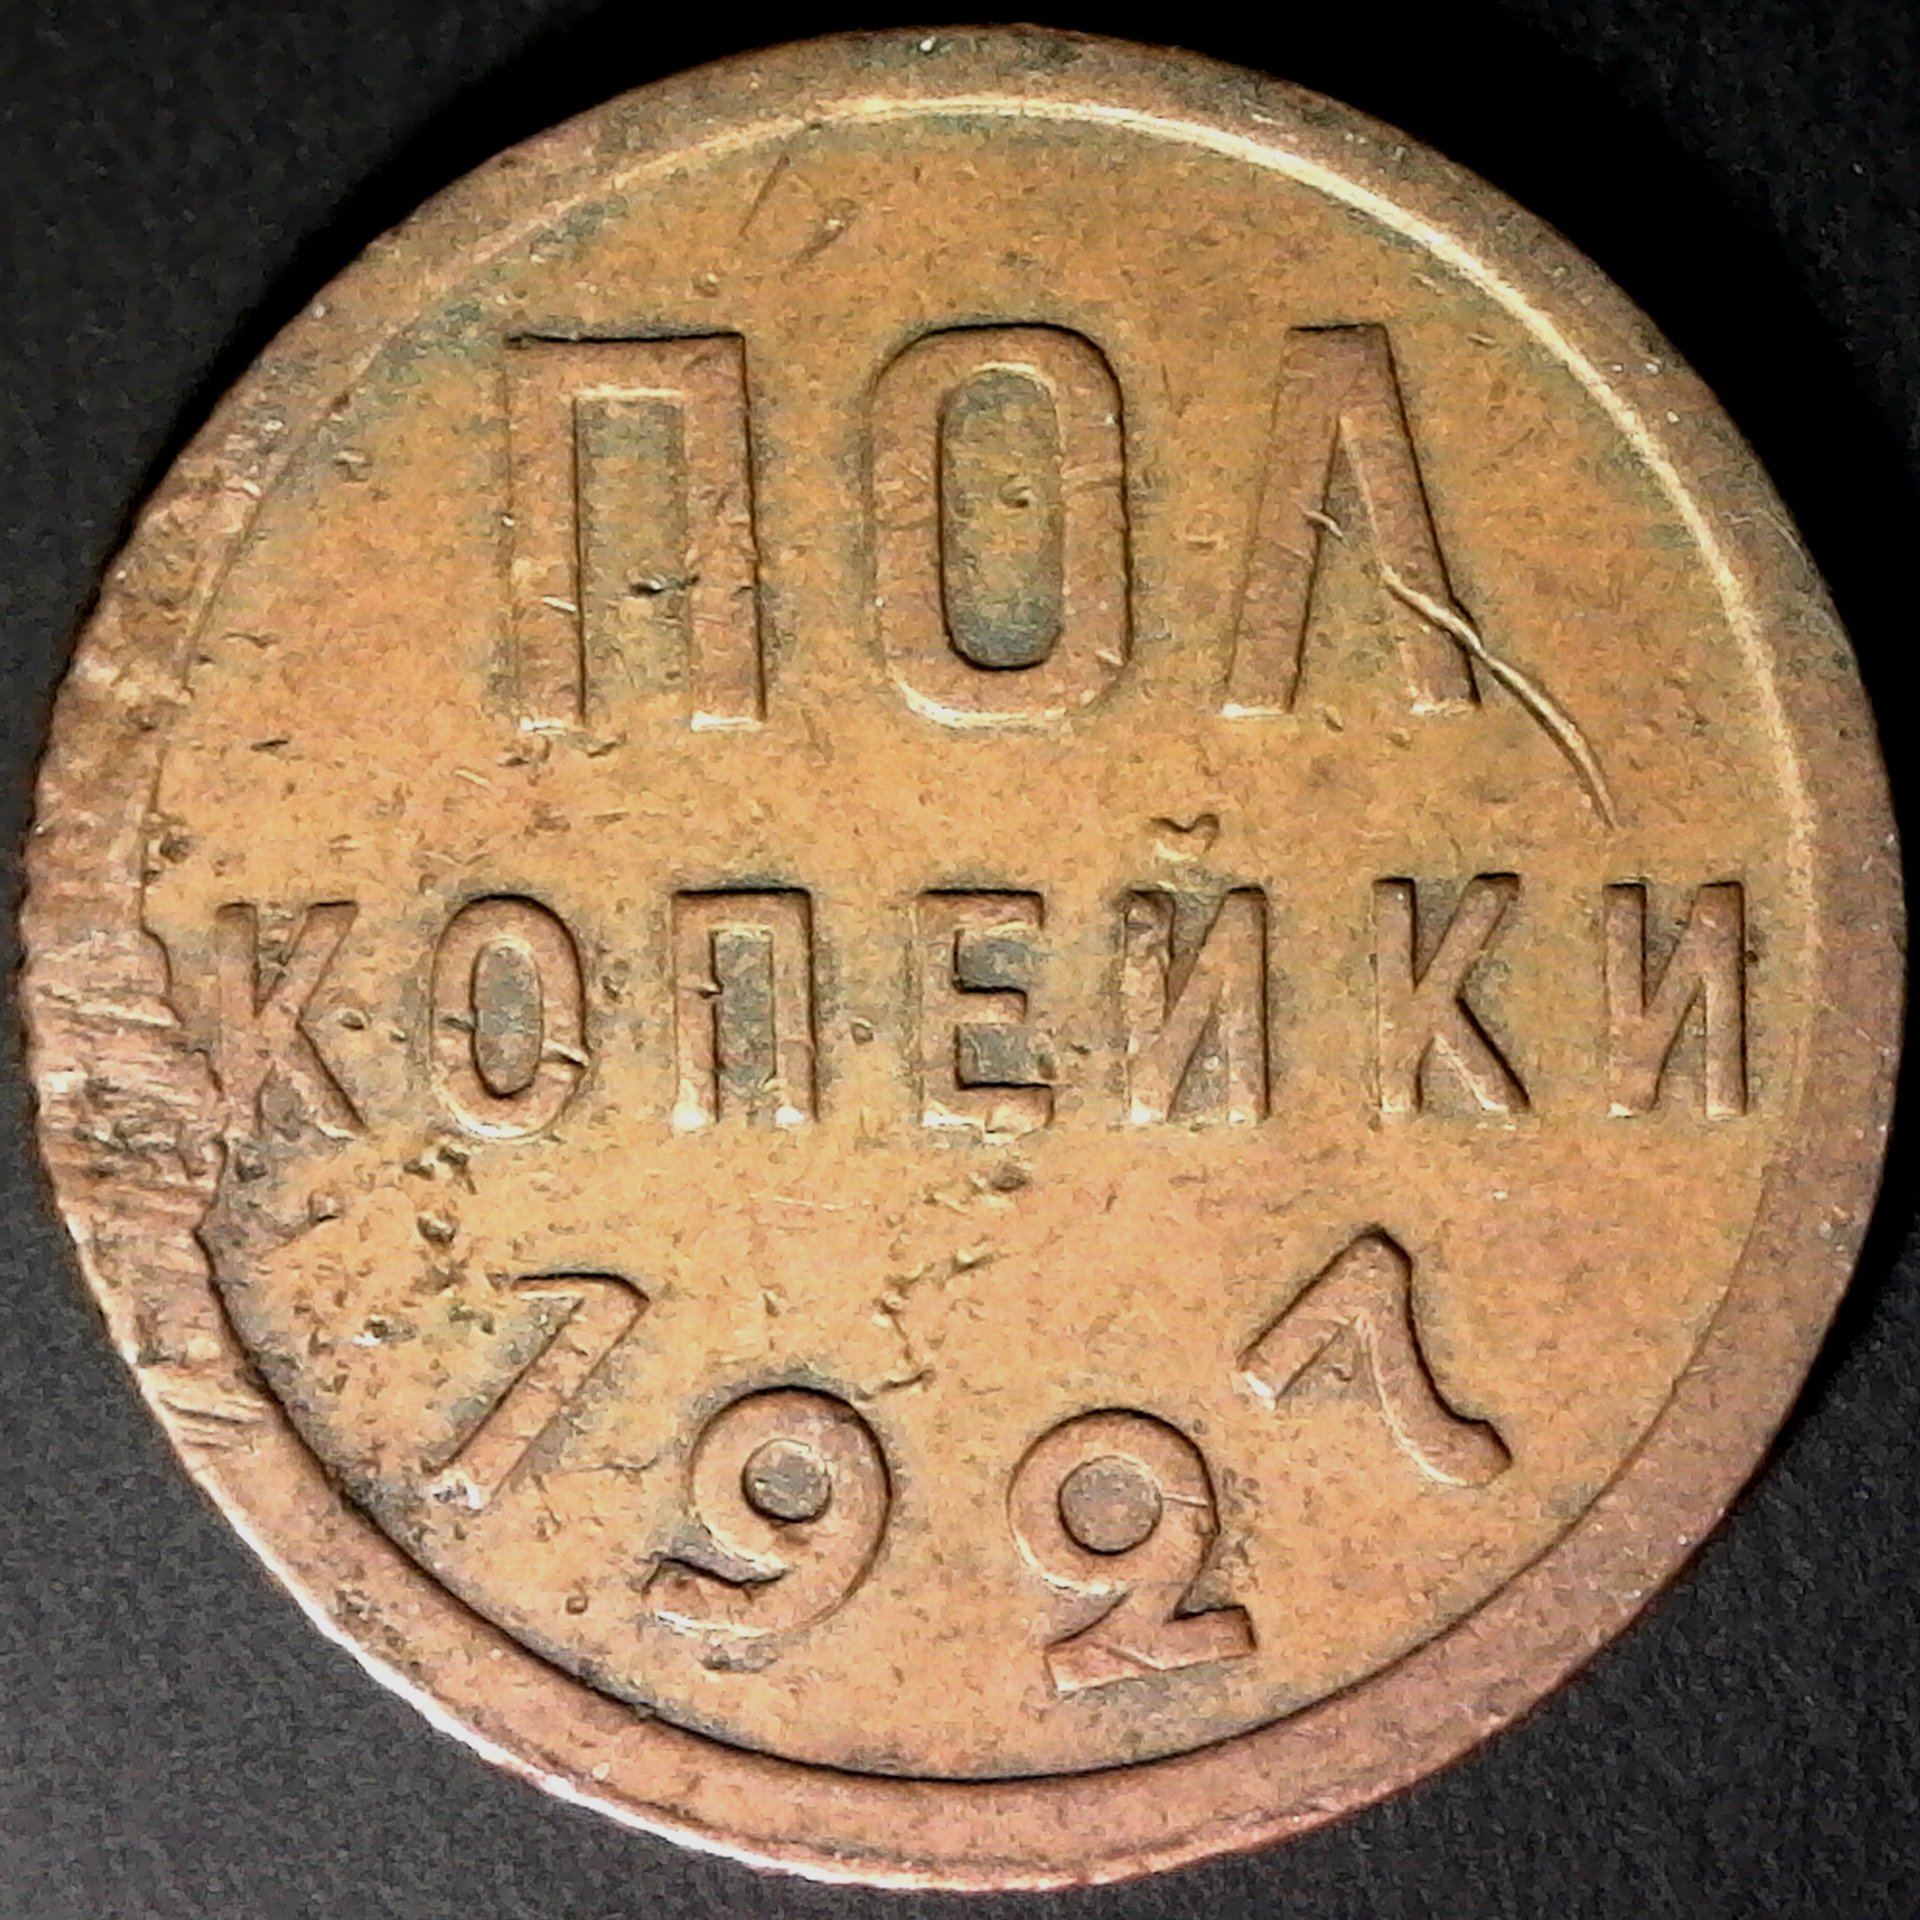 Russia Half Kopek 1927 rev.jpg